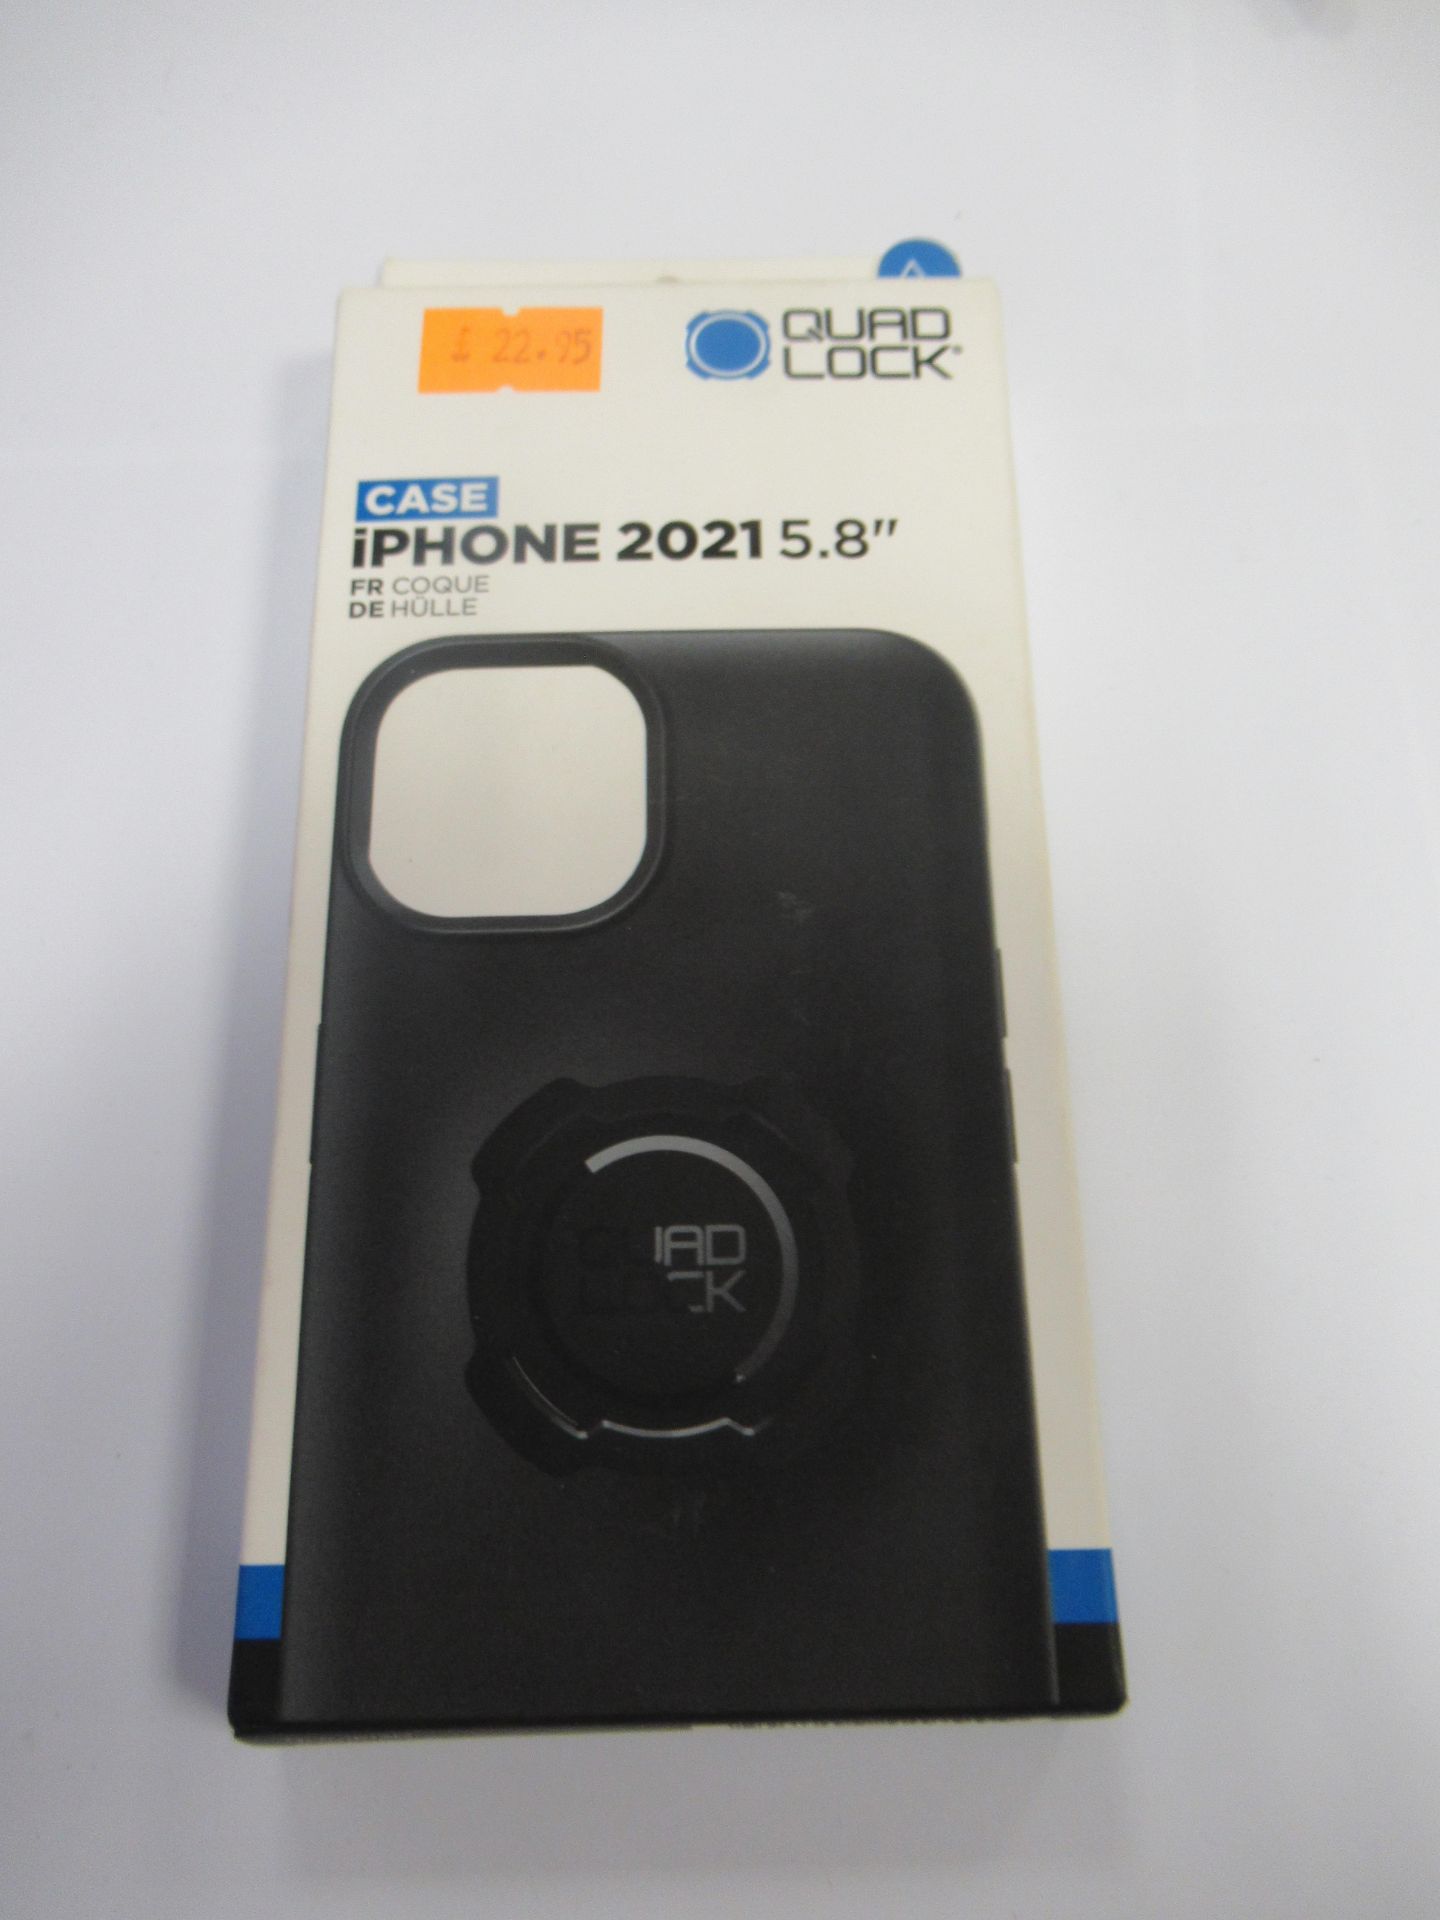 Quad Lock Black Phone Cases - Image 12 of 23